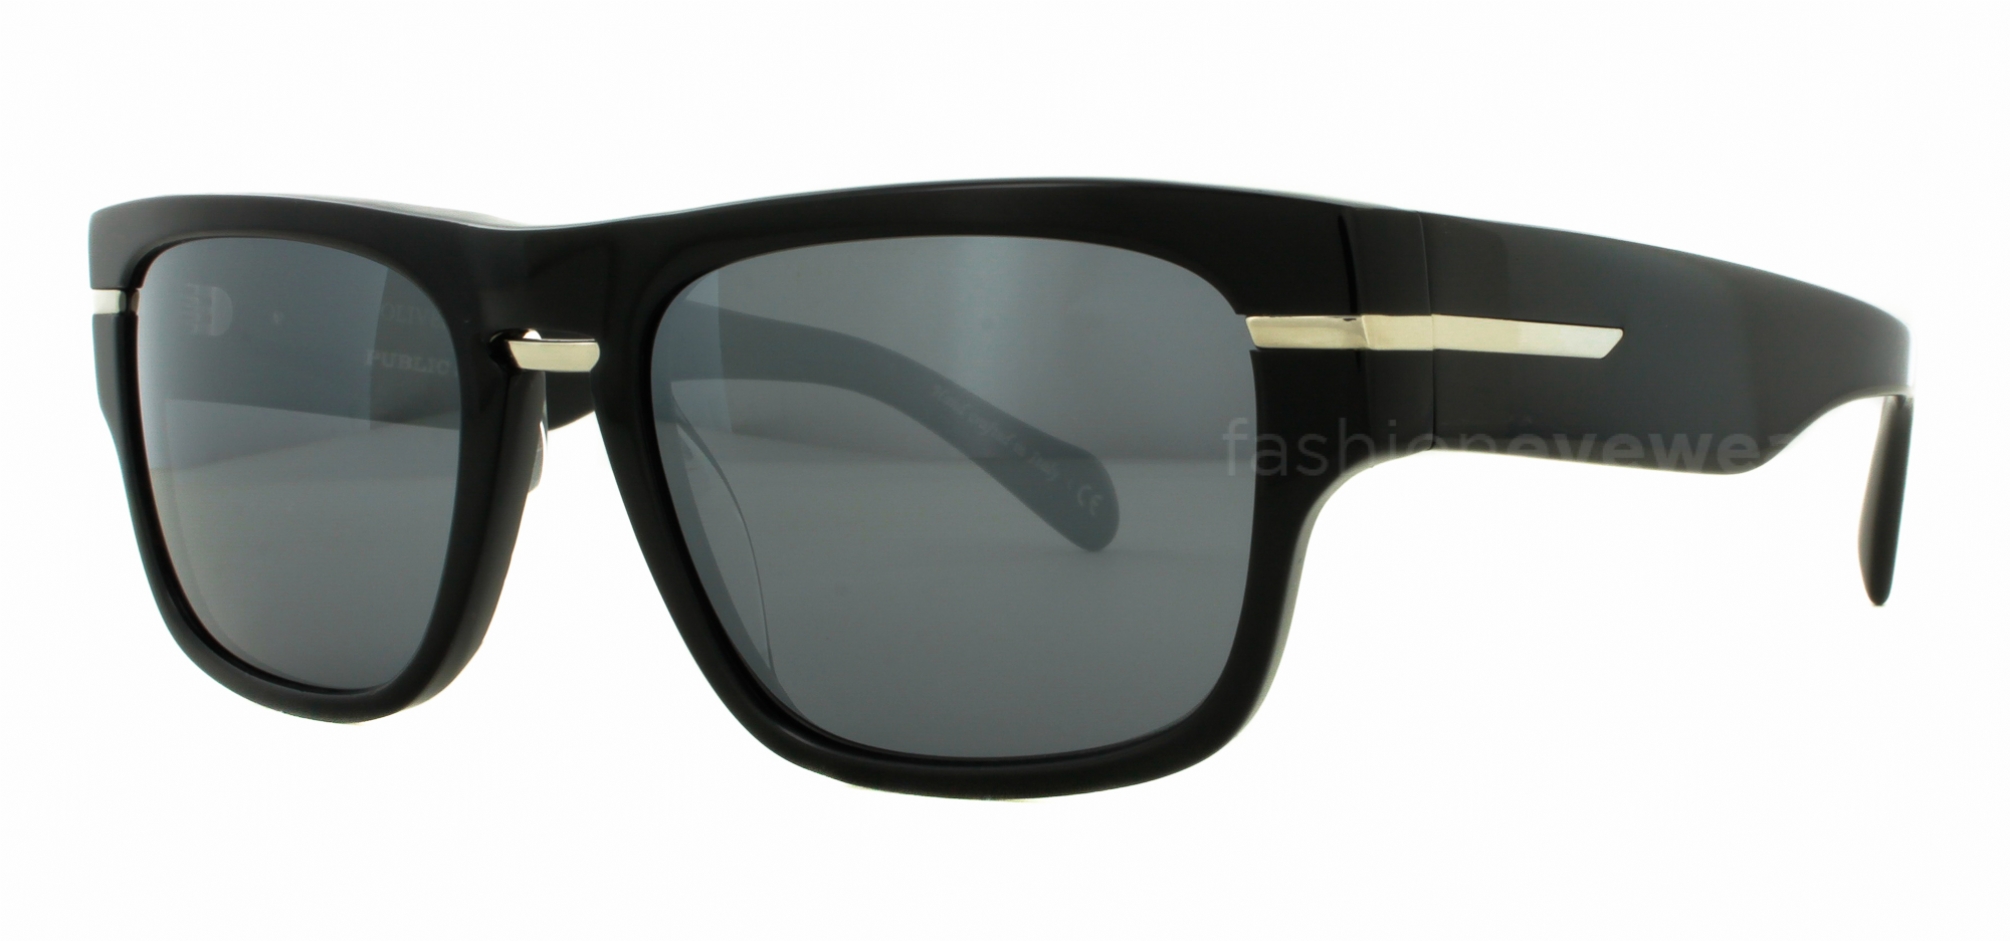 Vintage Hobie Marbella Polarized Sunglasses